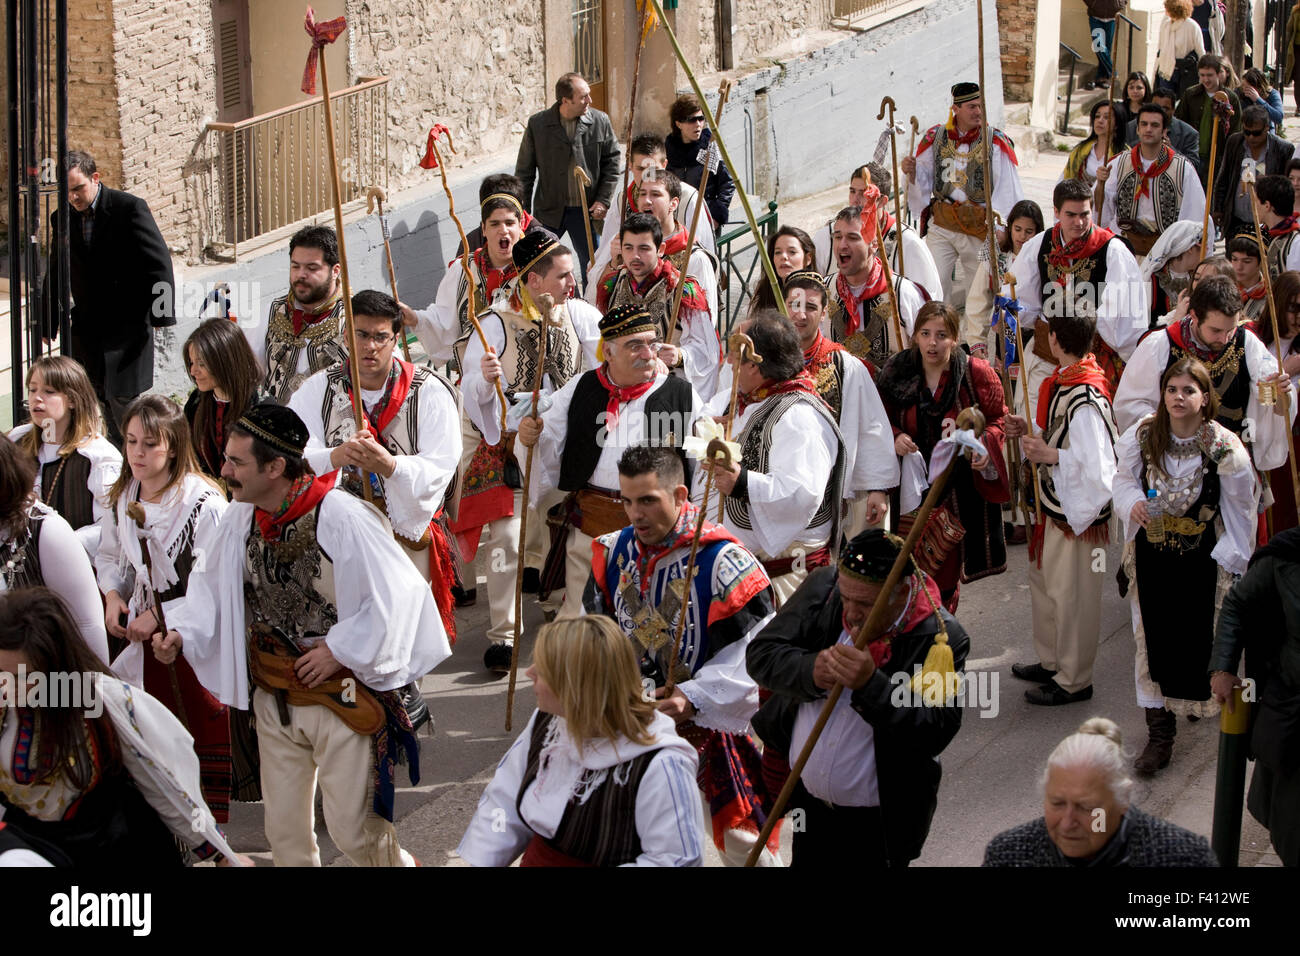 Gruppo di Greci vlach ballerini di nozze, shams e i capi delle guardie sul loro modo per il pastore la baracche. Thivai, Grecia Foto Stock